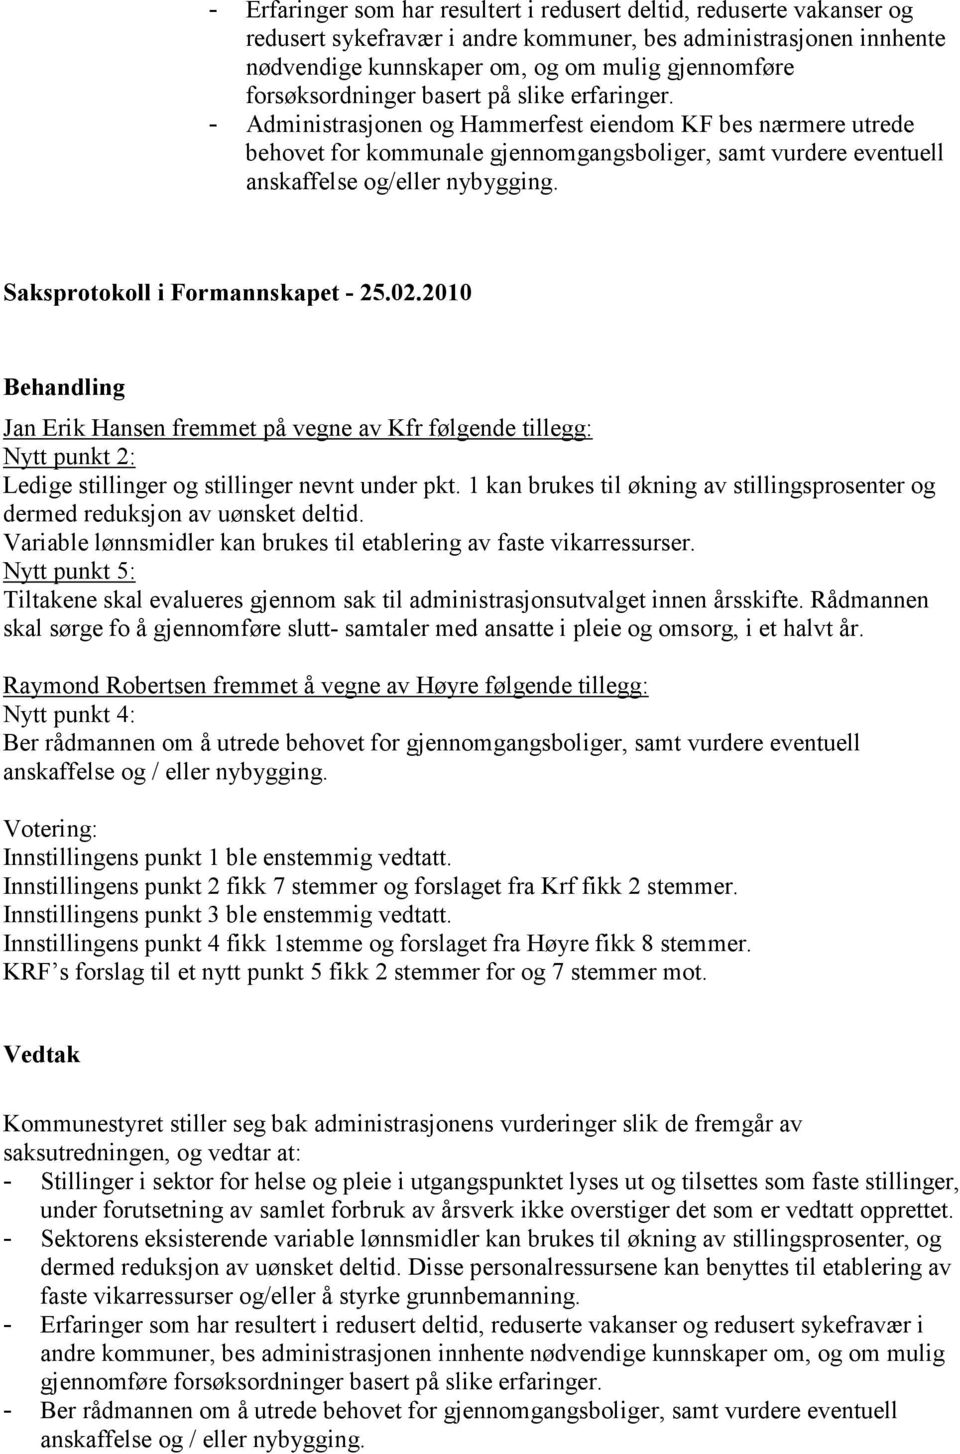 - Administrasjonen og Hammerfest eiendom KF bes nærmere utrede behovet for kommunale gjennomgangsboliger, samt vurdere eventuell anskaffelse og/eller nybygging.